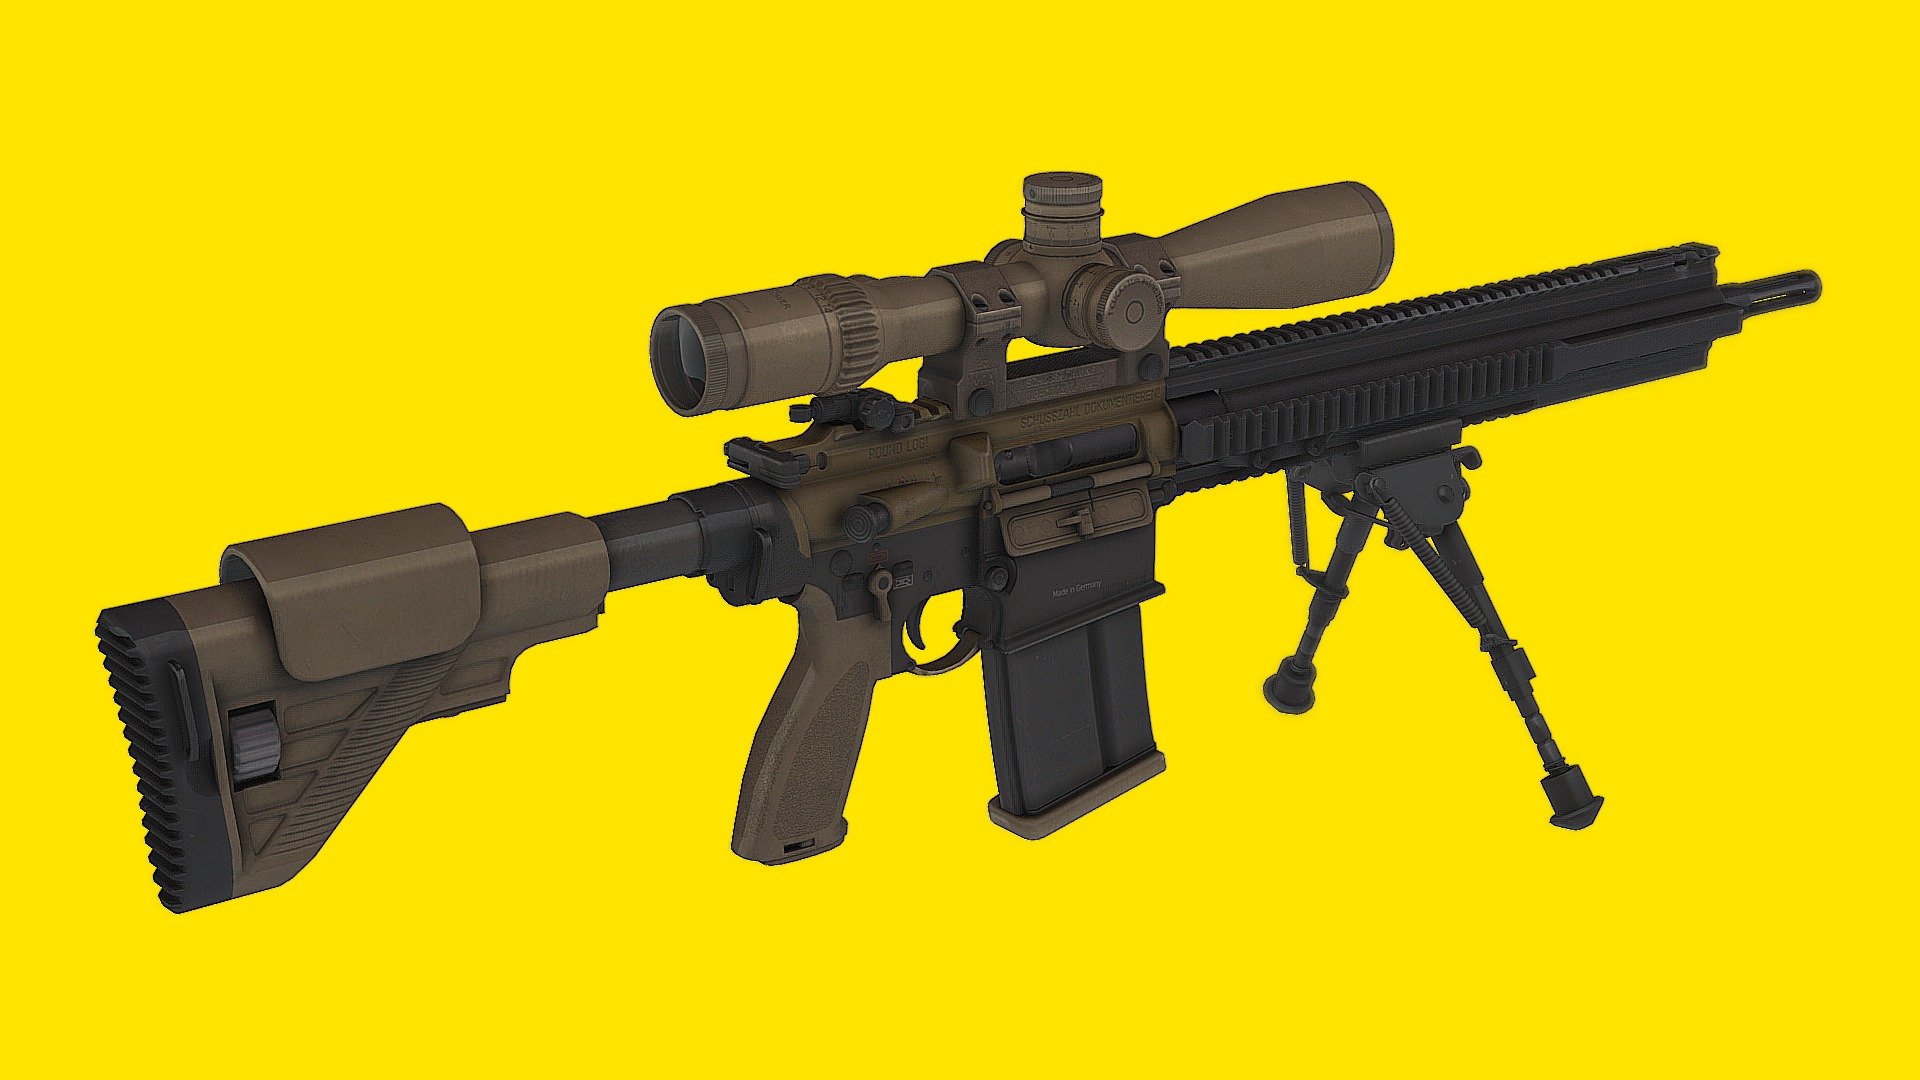 Assault Rifle HK G28 Combat Rifle

Assault Rifle HK G28 Combat Rifle Blender File - Assault Rifle HK G28 Combat Rifle Blender File - 3D model by momsboxtv 3d model